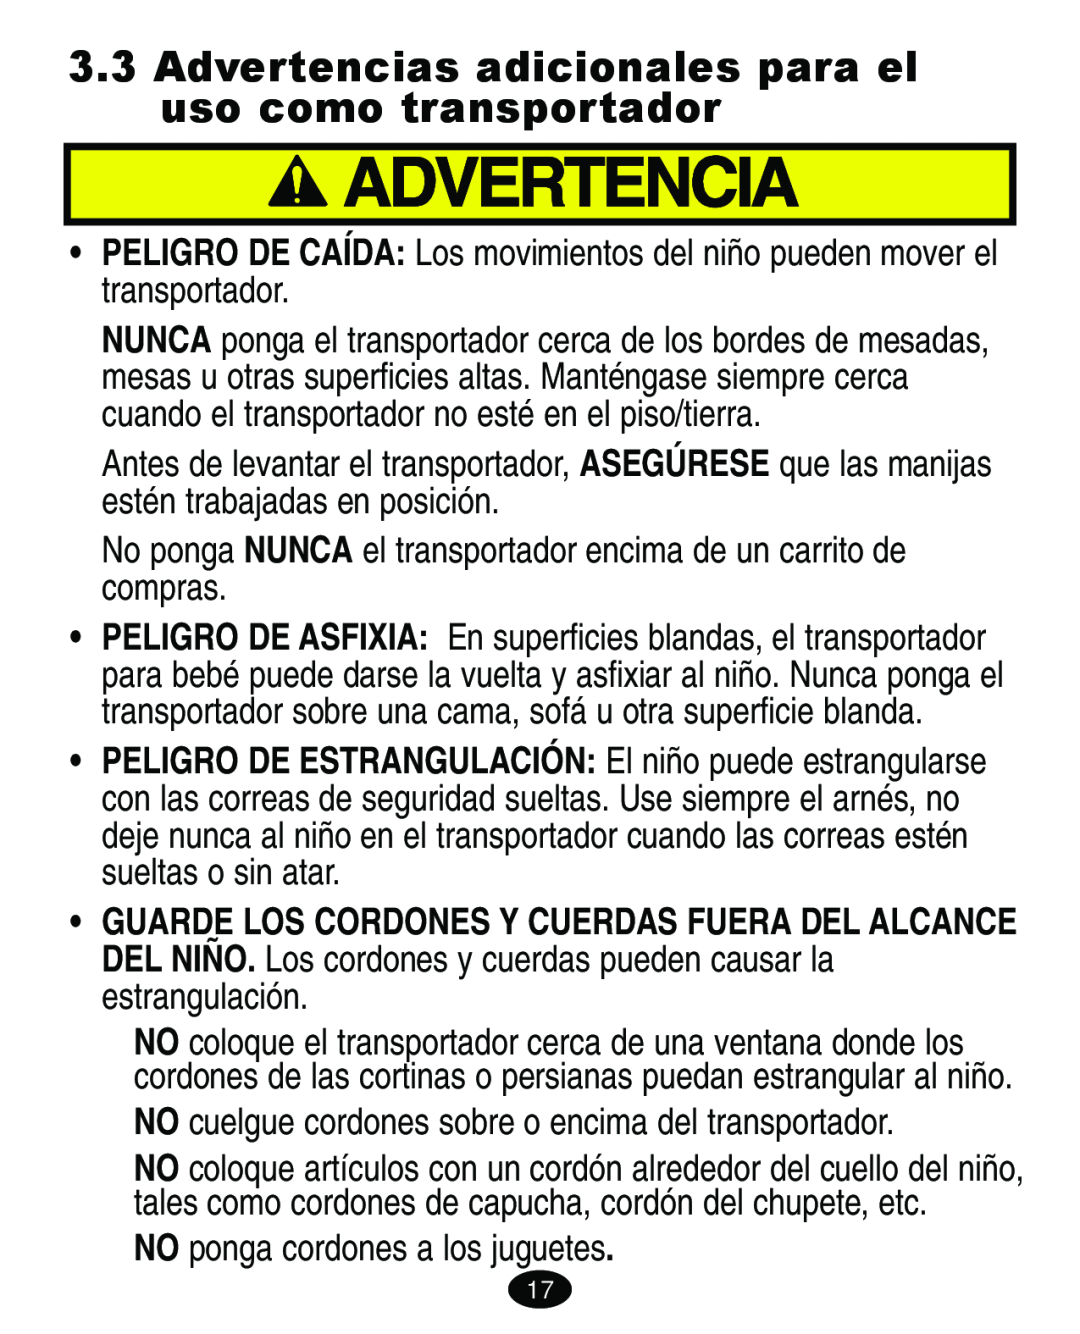 Graco 4460402 manual Advertencias adicionales para el uso como transportador, NO ponga cordones a los juguetes 